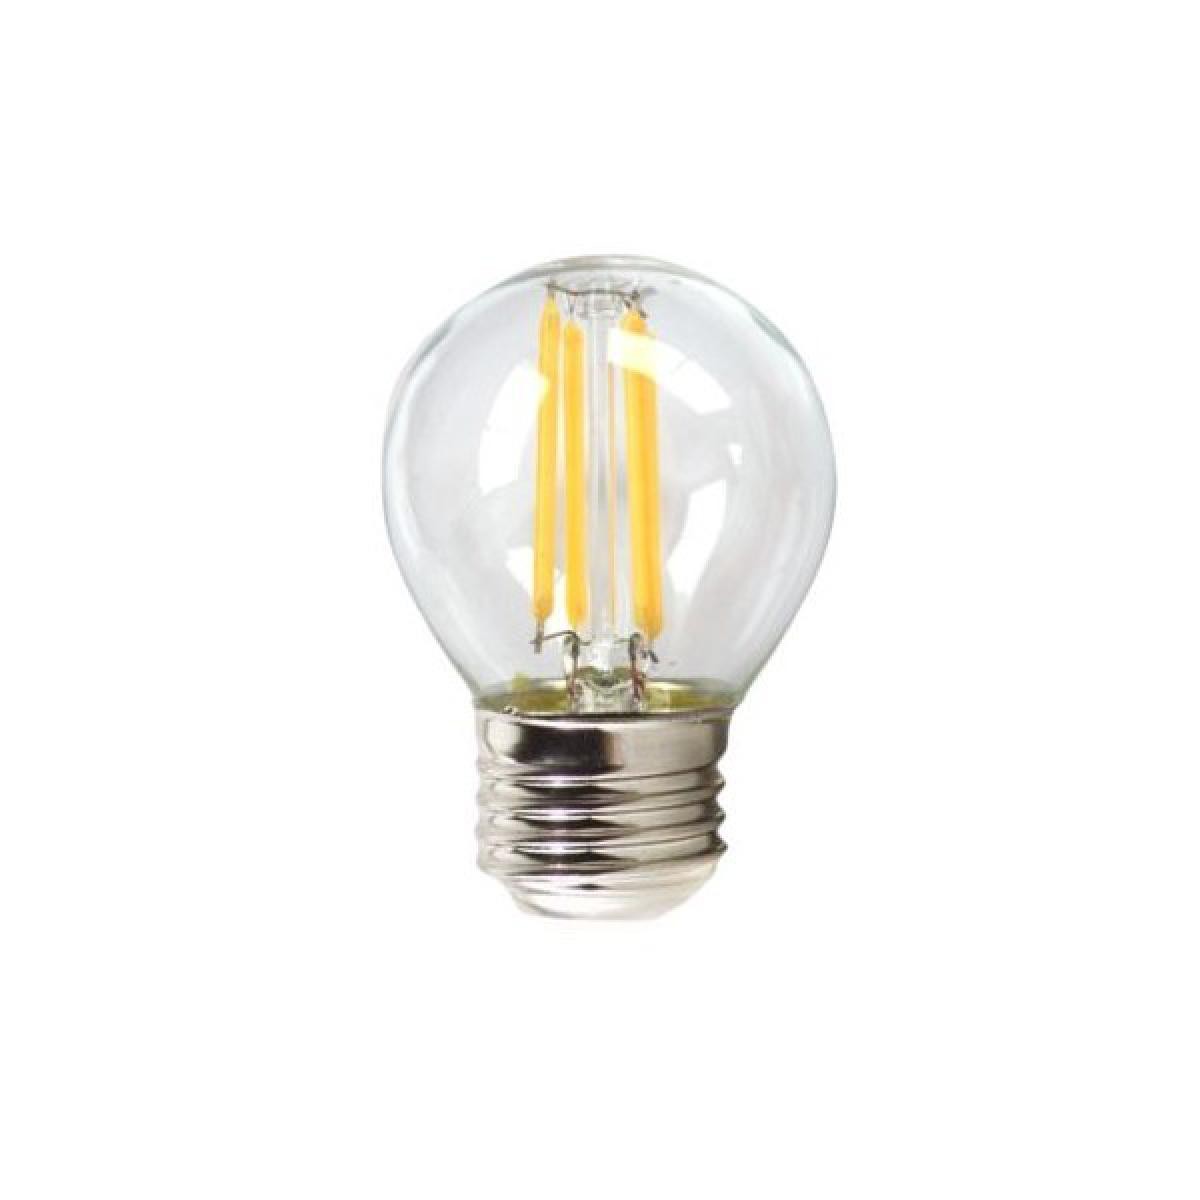 Totalcadeau - Ampoule LED Sphérique E27 4W température 3000K A++ (Lumière chaude) pas cher - Ampoules LED